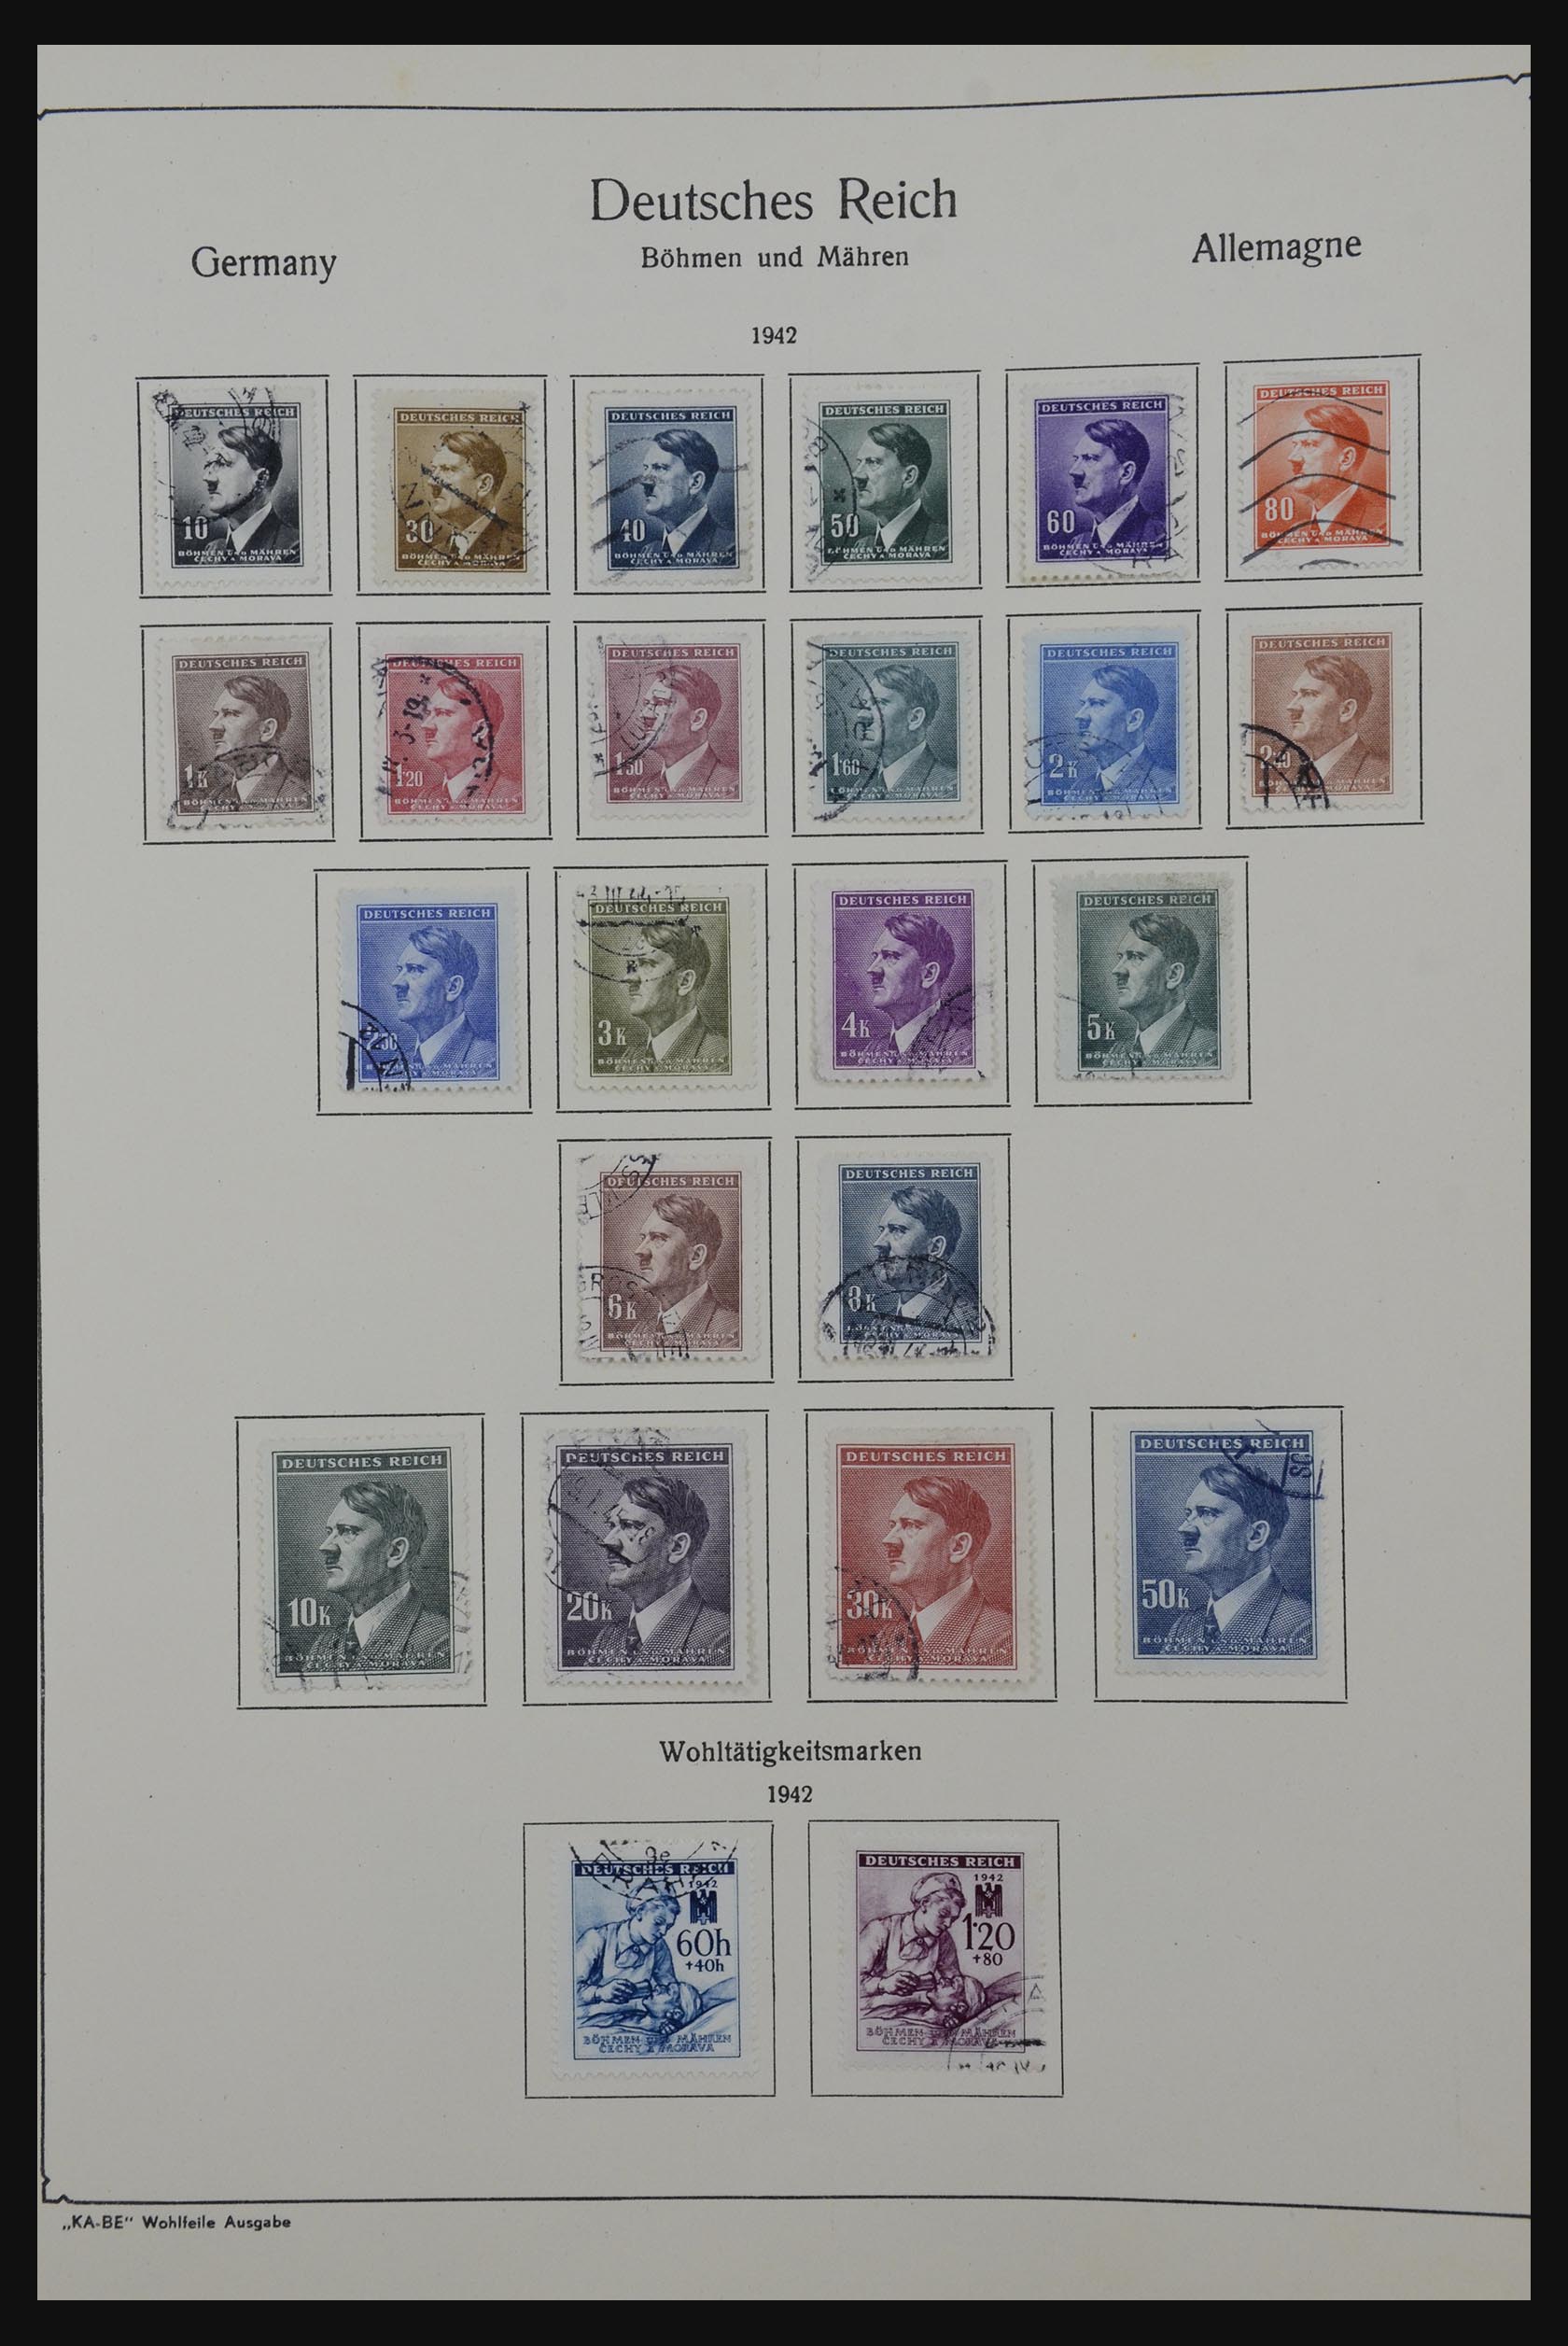 32162 102 - 32162 Duitsland 1850-1950.